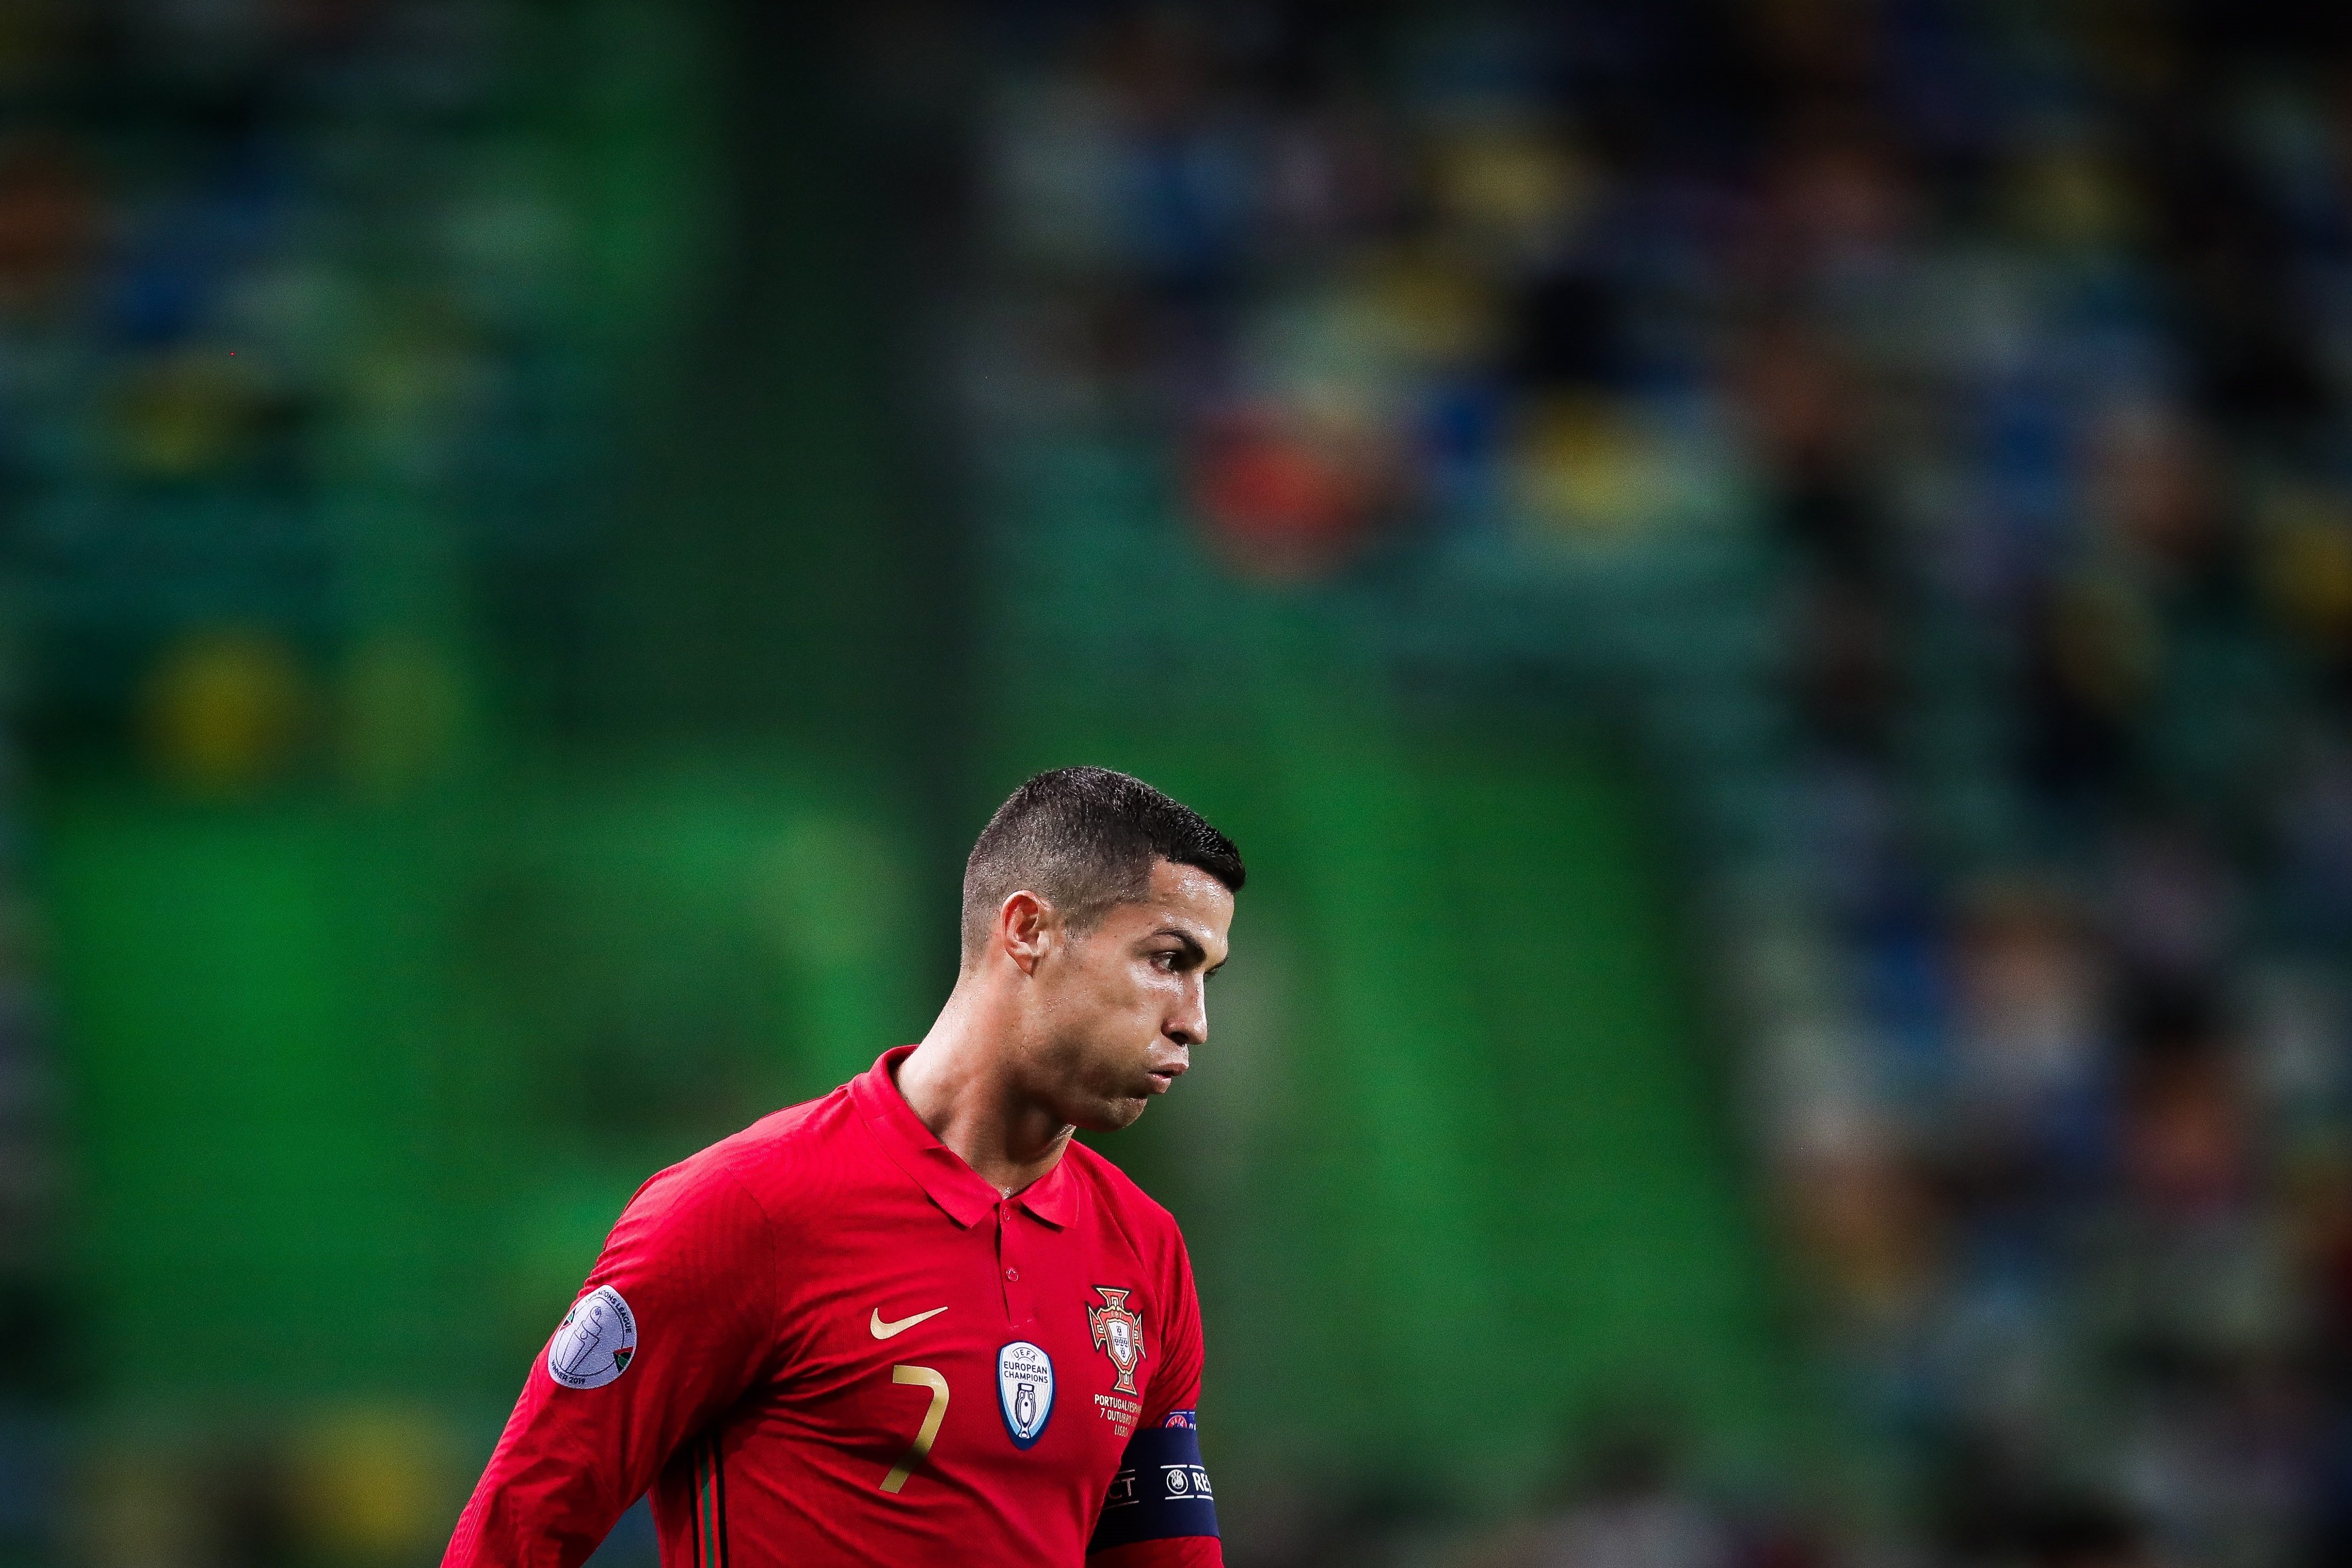 Cristiano, positiu per coronavirus: en risc per al partit contra el Barça